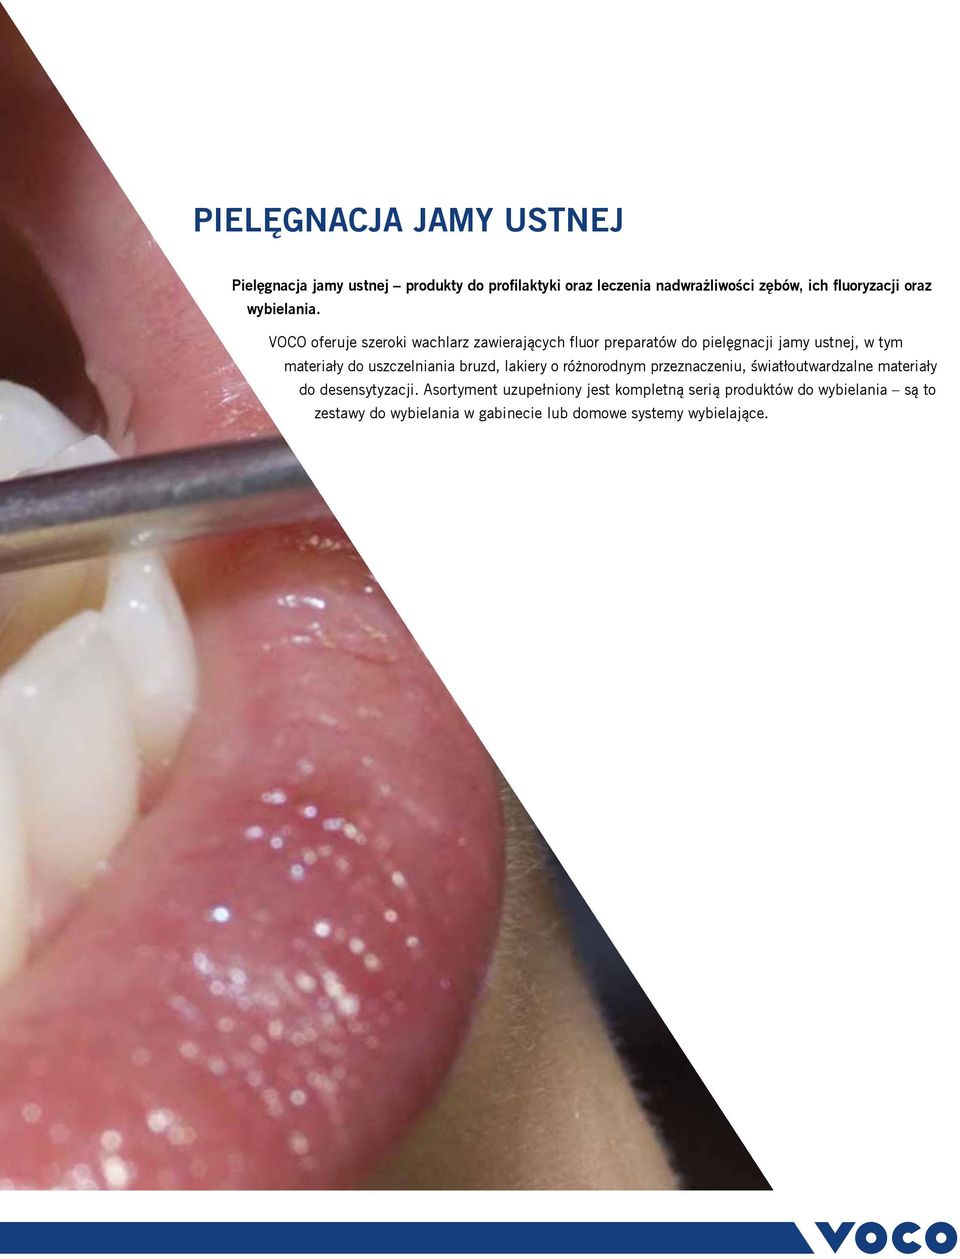 VOCO oferuje szeroki wachlarz zawierających fluor preparatów do pielęgnacji jamy ustnej, w tym materiały do uszczelniania